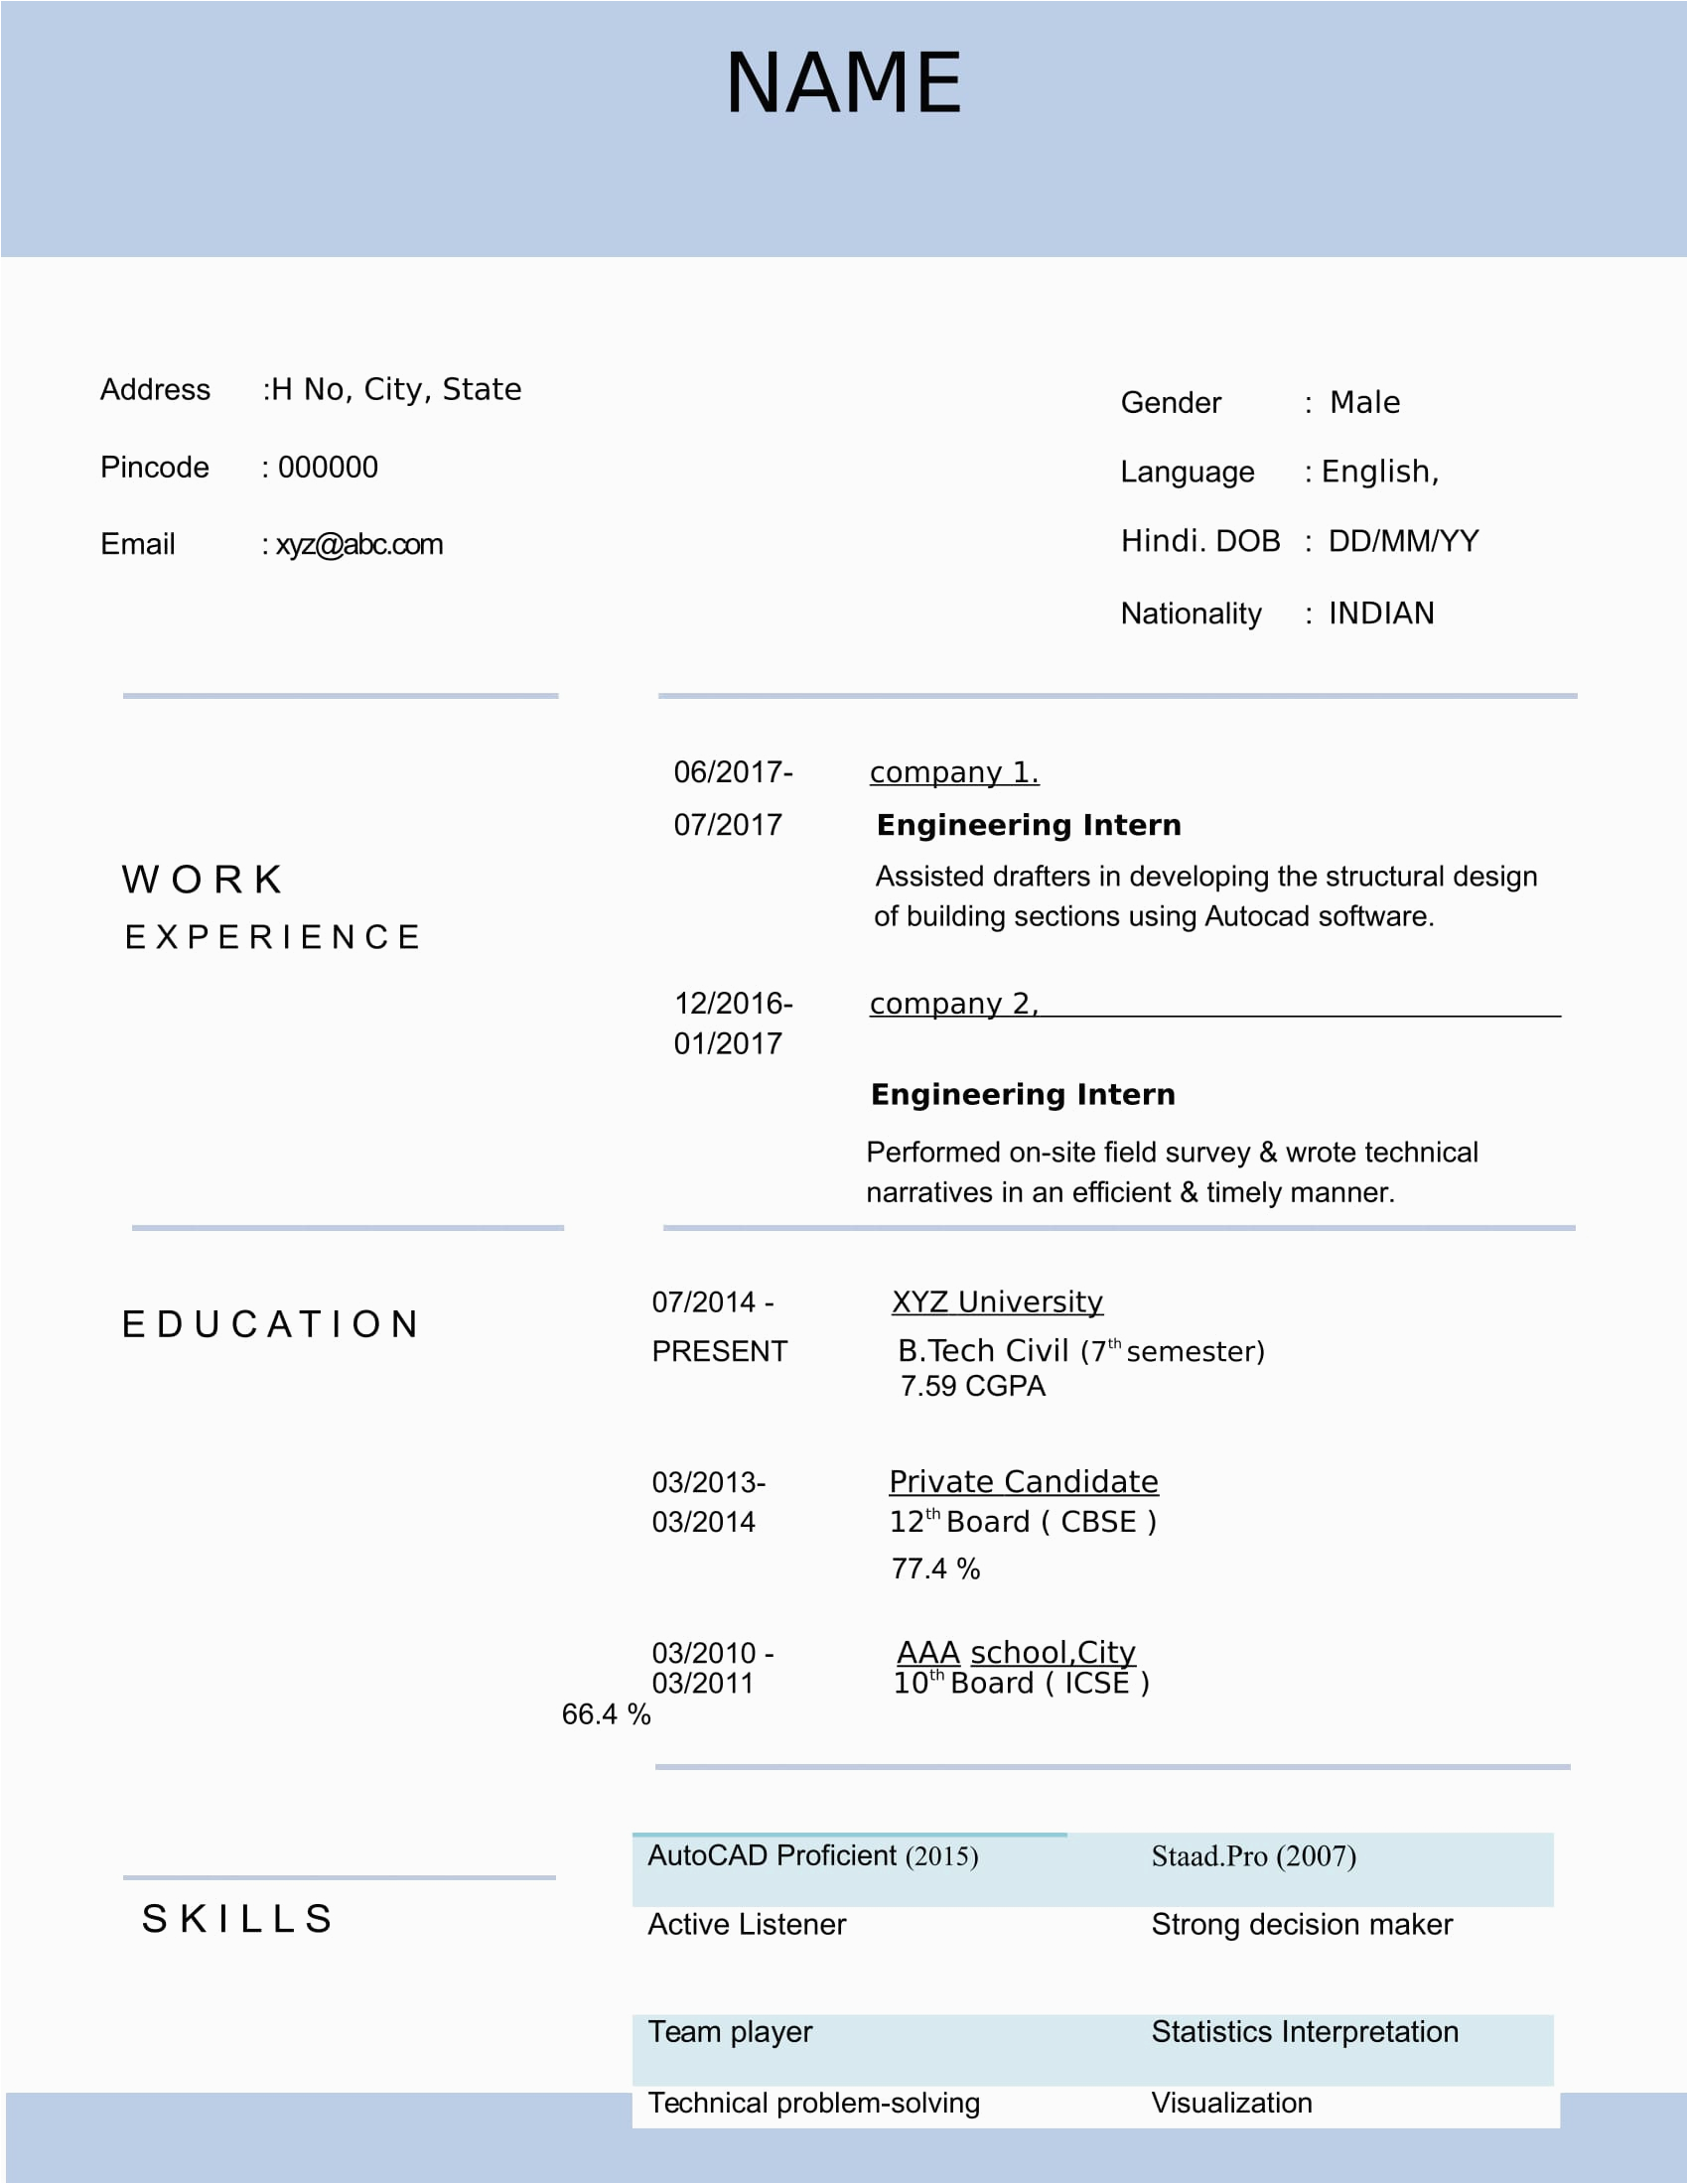 Sample Resume for Civil Engineer Fresher Resume Templates for Civil Engineer Freshers Download Free